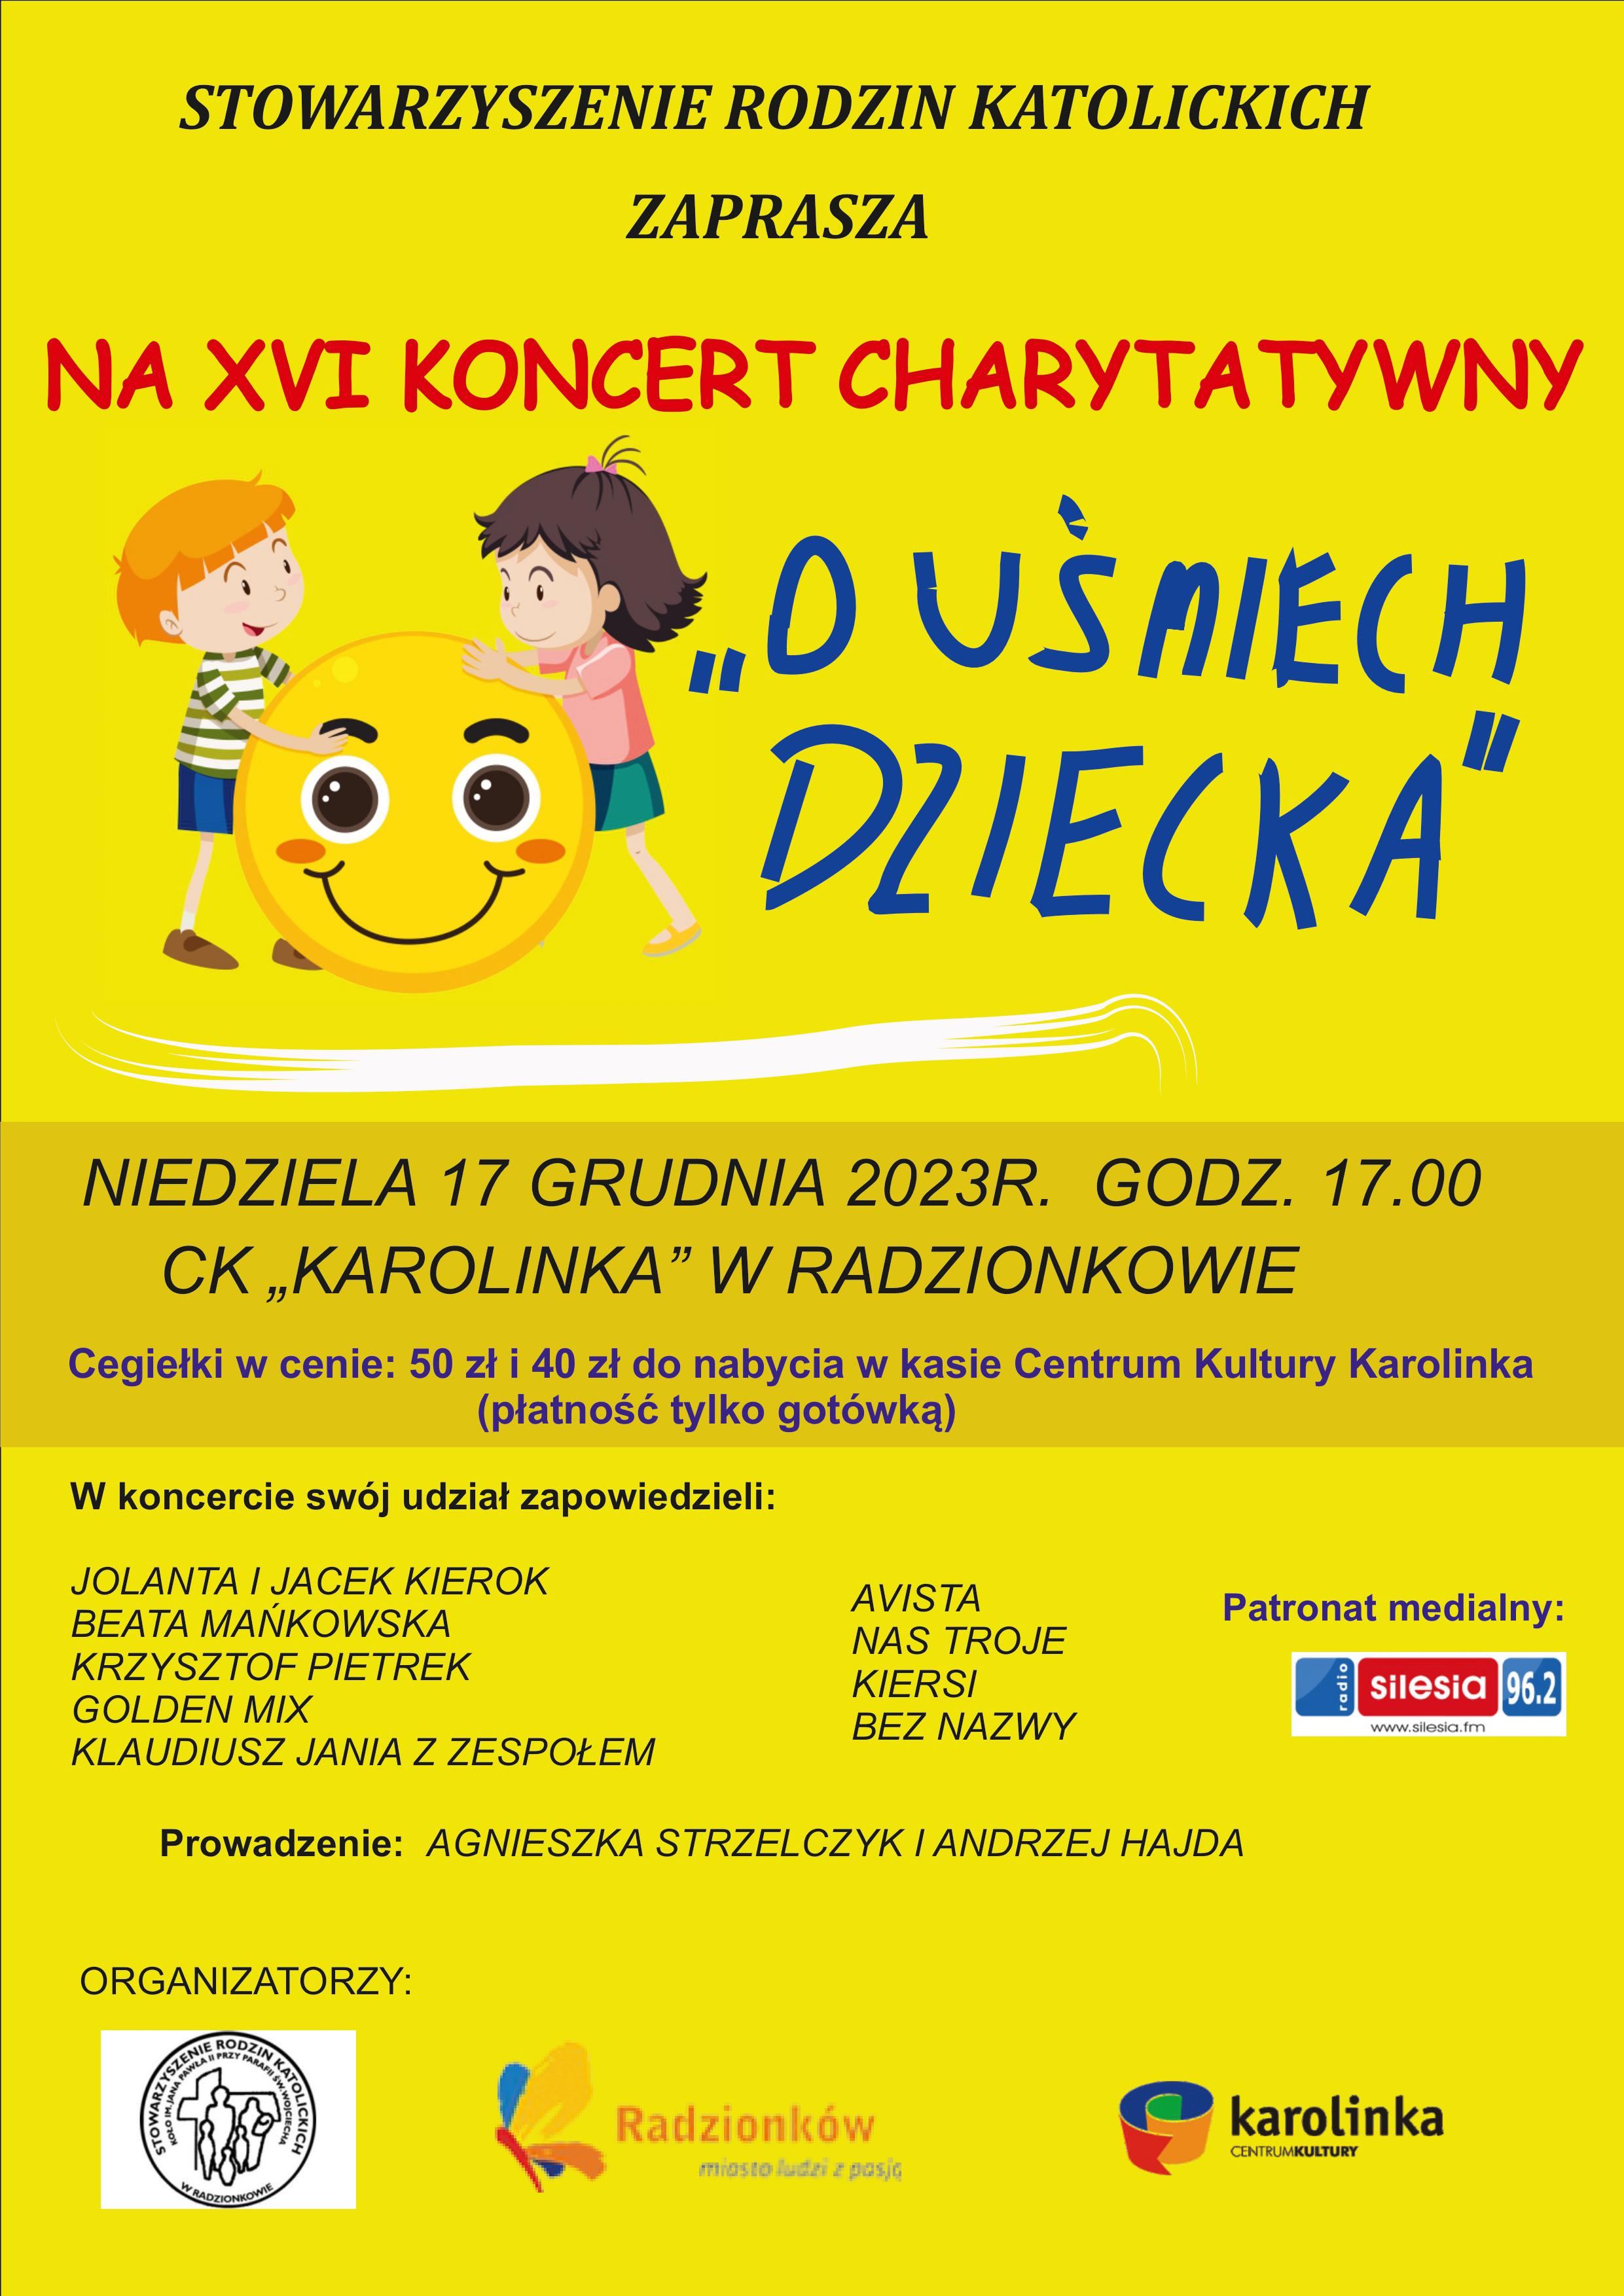 XVI koncert charytatywny "O uśmiech dziecka"